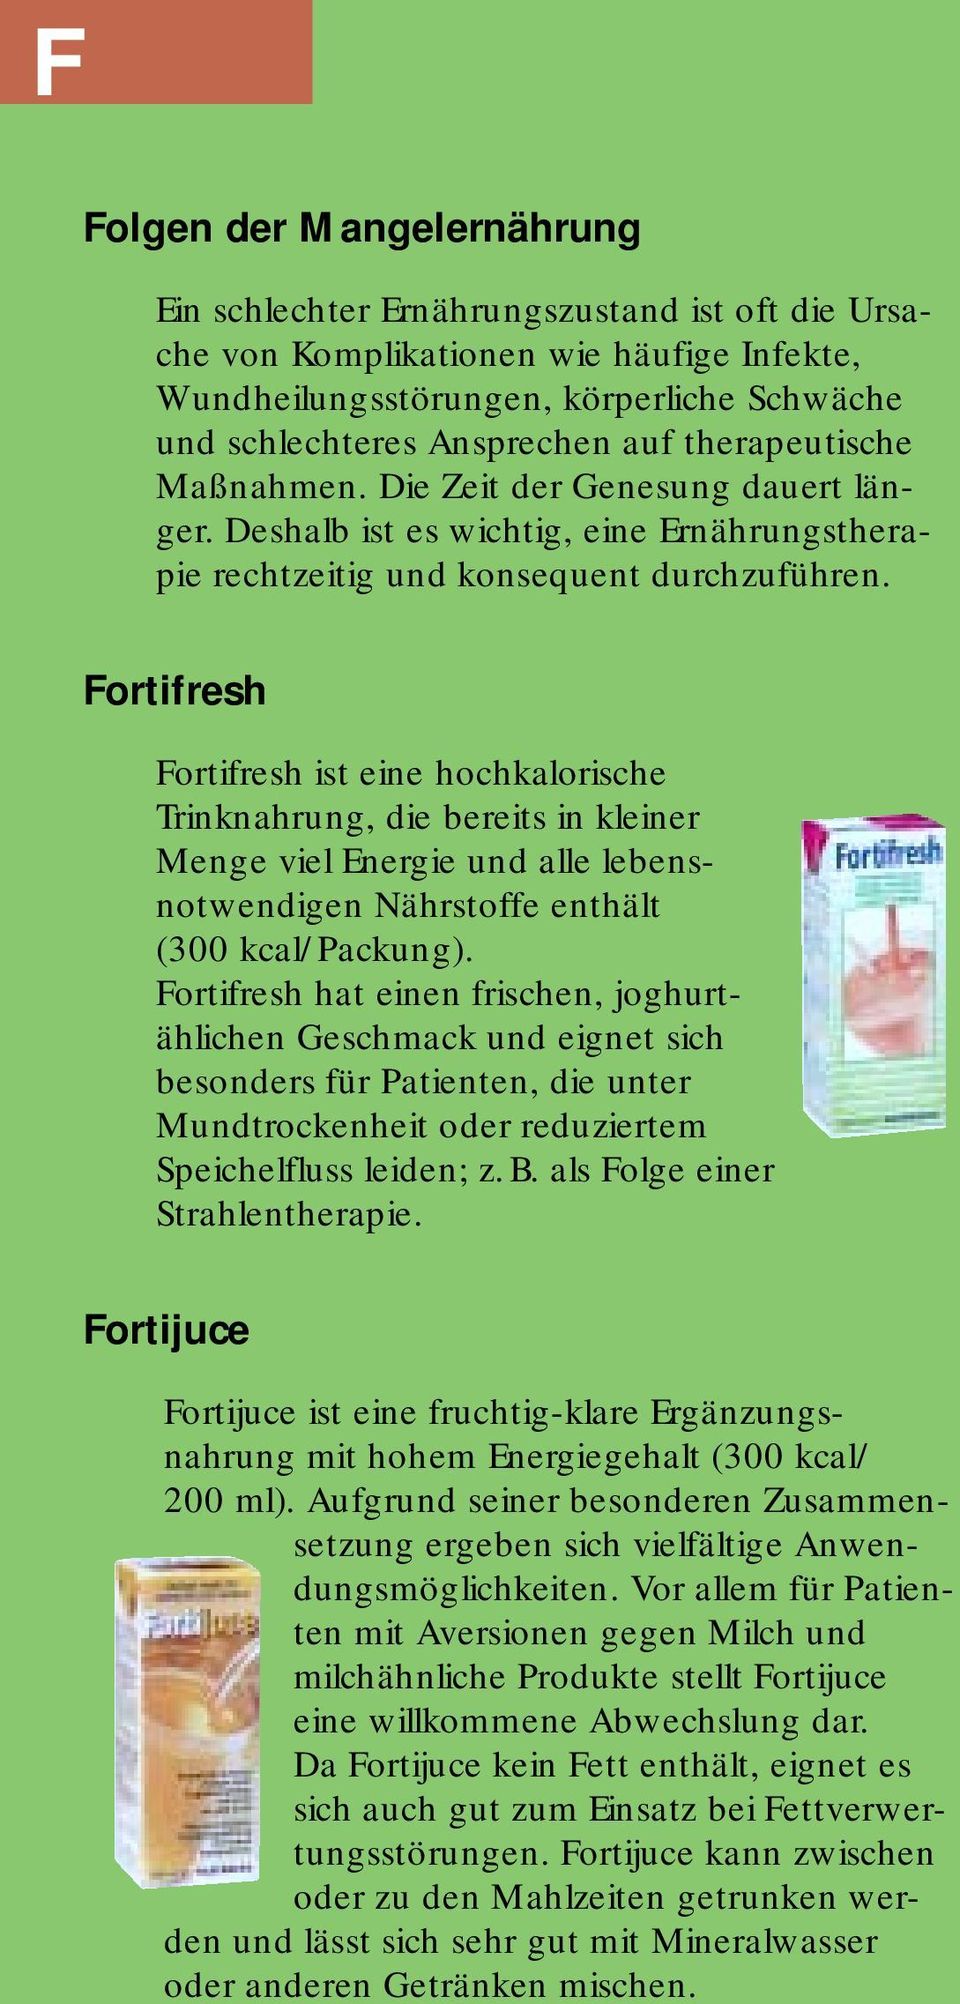 Fortifresh Fortifresh ist eine hochkalorische Trinknahrung, die bereits in kleiner Menge viel Energie und alle lebensnotwendigen Nährstoffe enthält (300 kcal/packung).